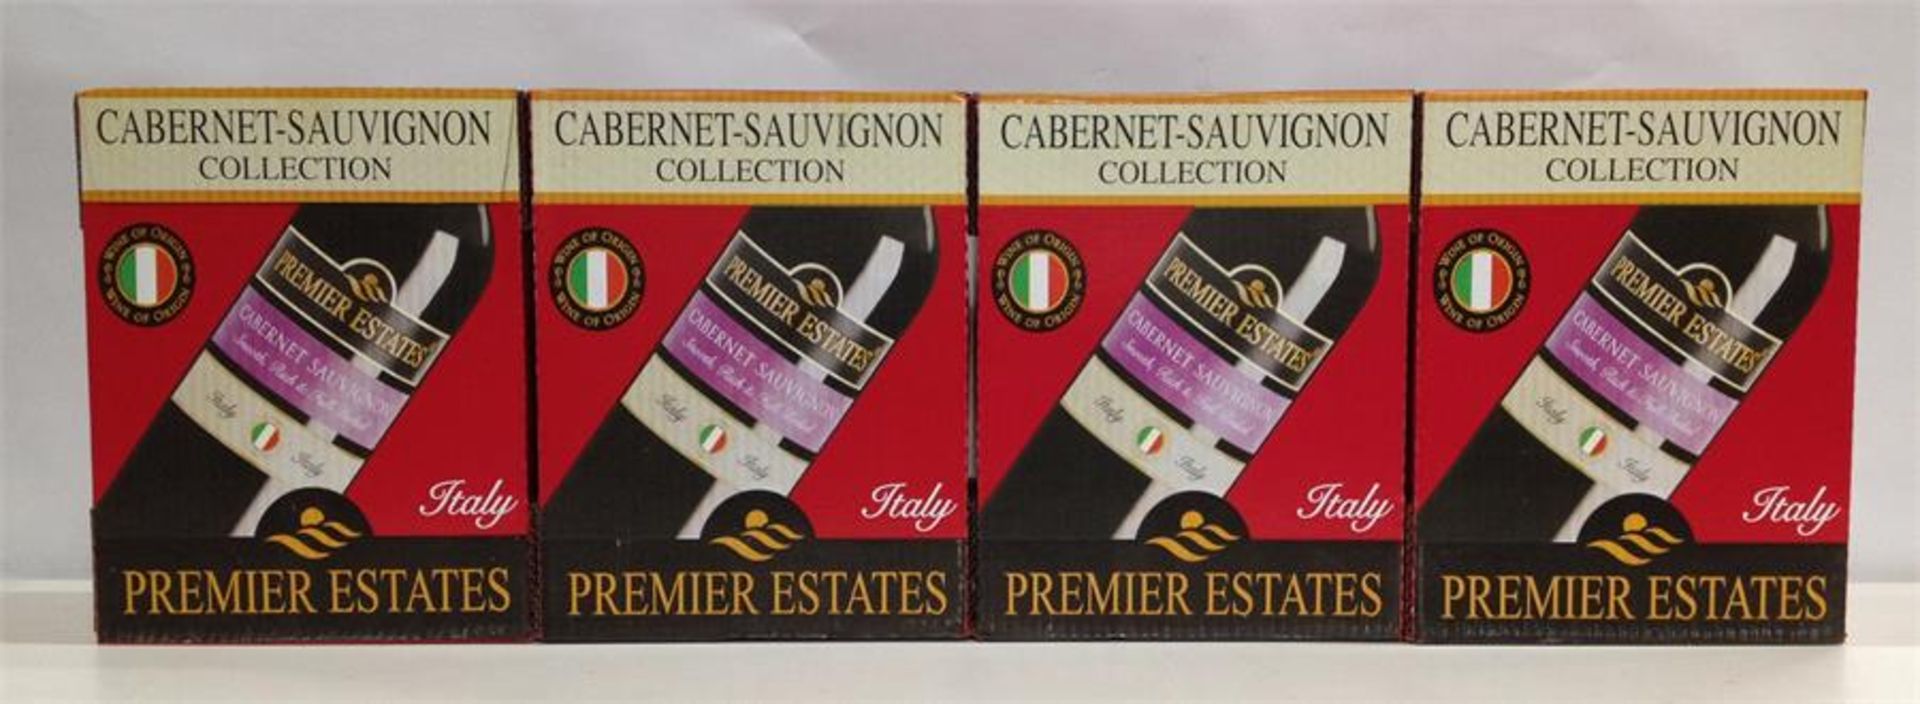 24 x 75cl Bottles Premier Estates Cabernet Sauvignon Premium Red Wine